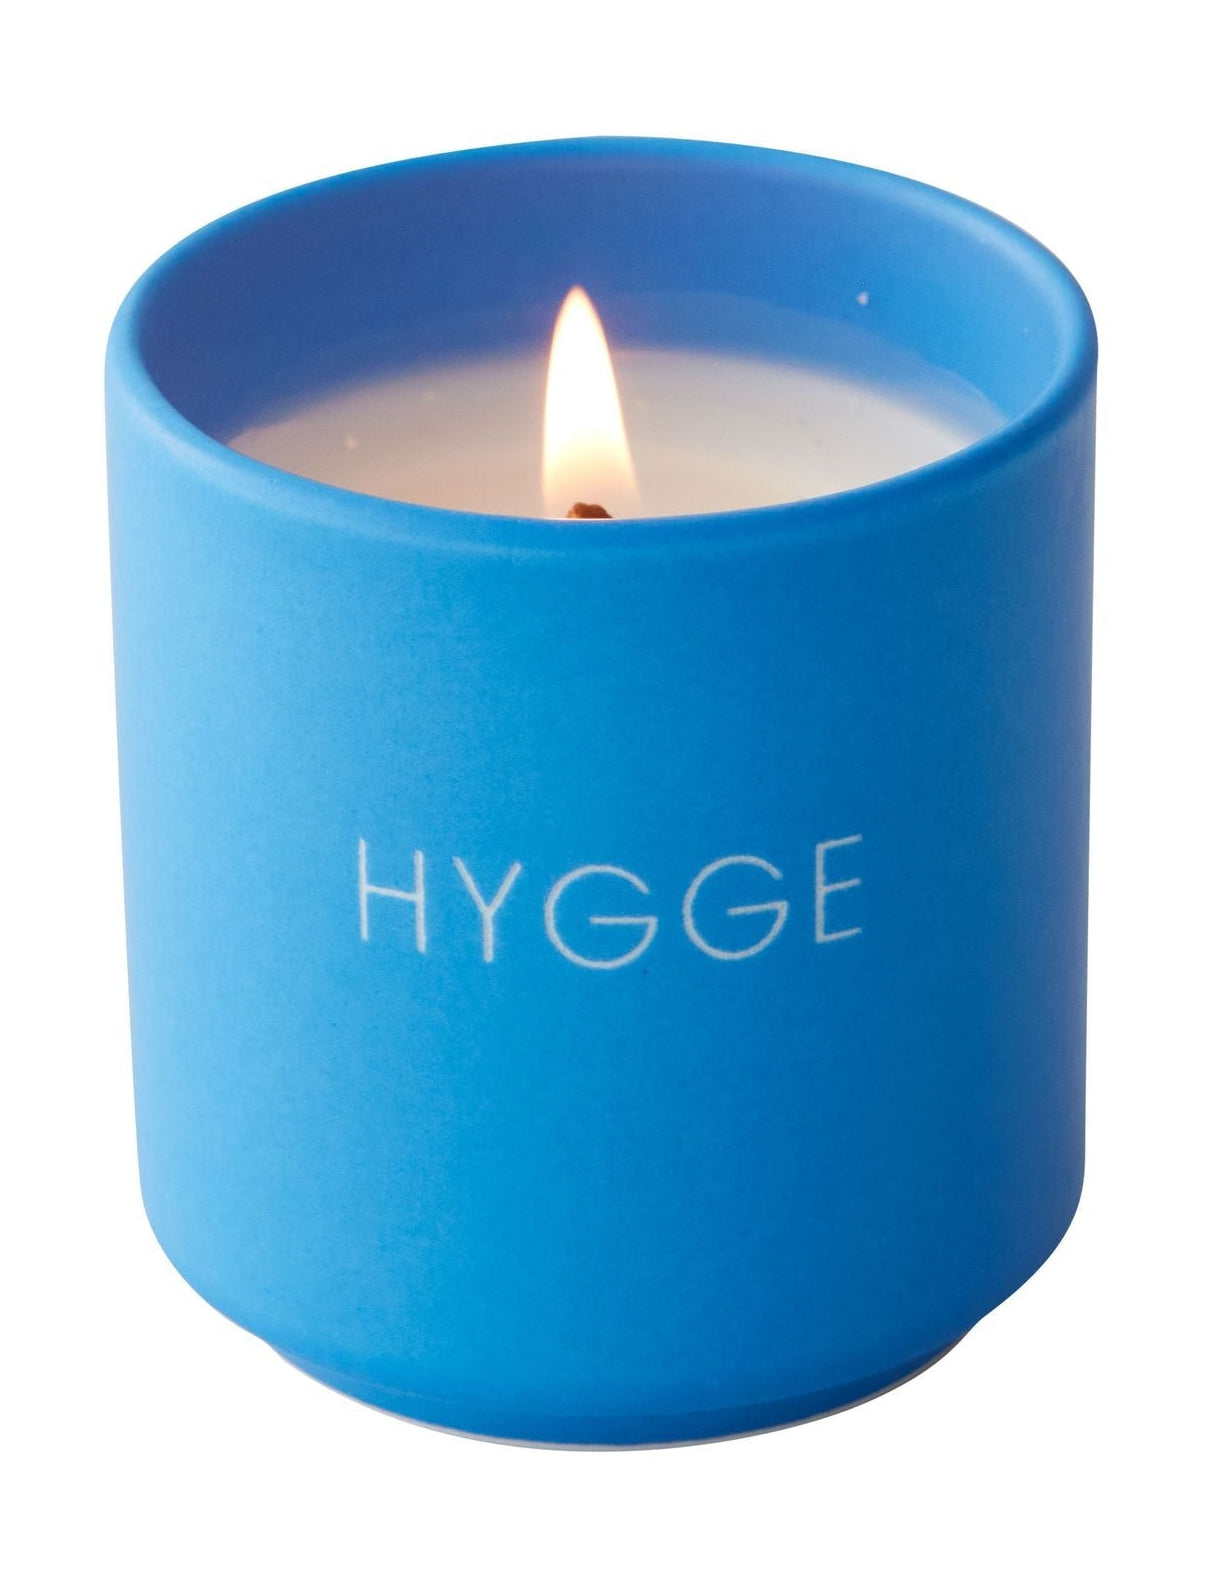 Listy projektowe zapachowe świeca przytulna, kobaltowy niebieski